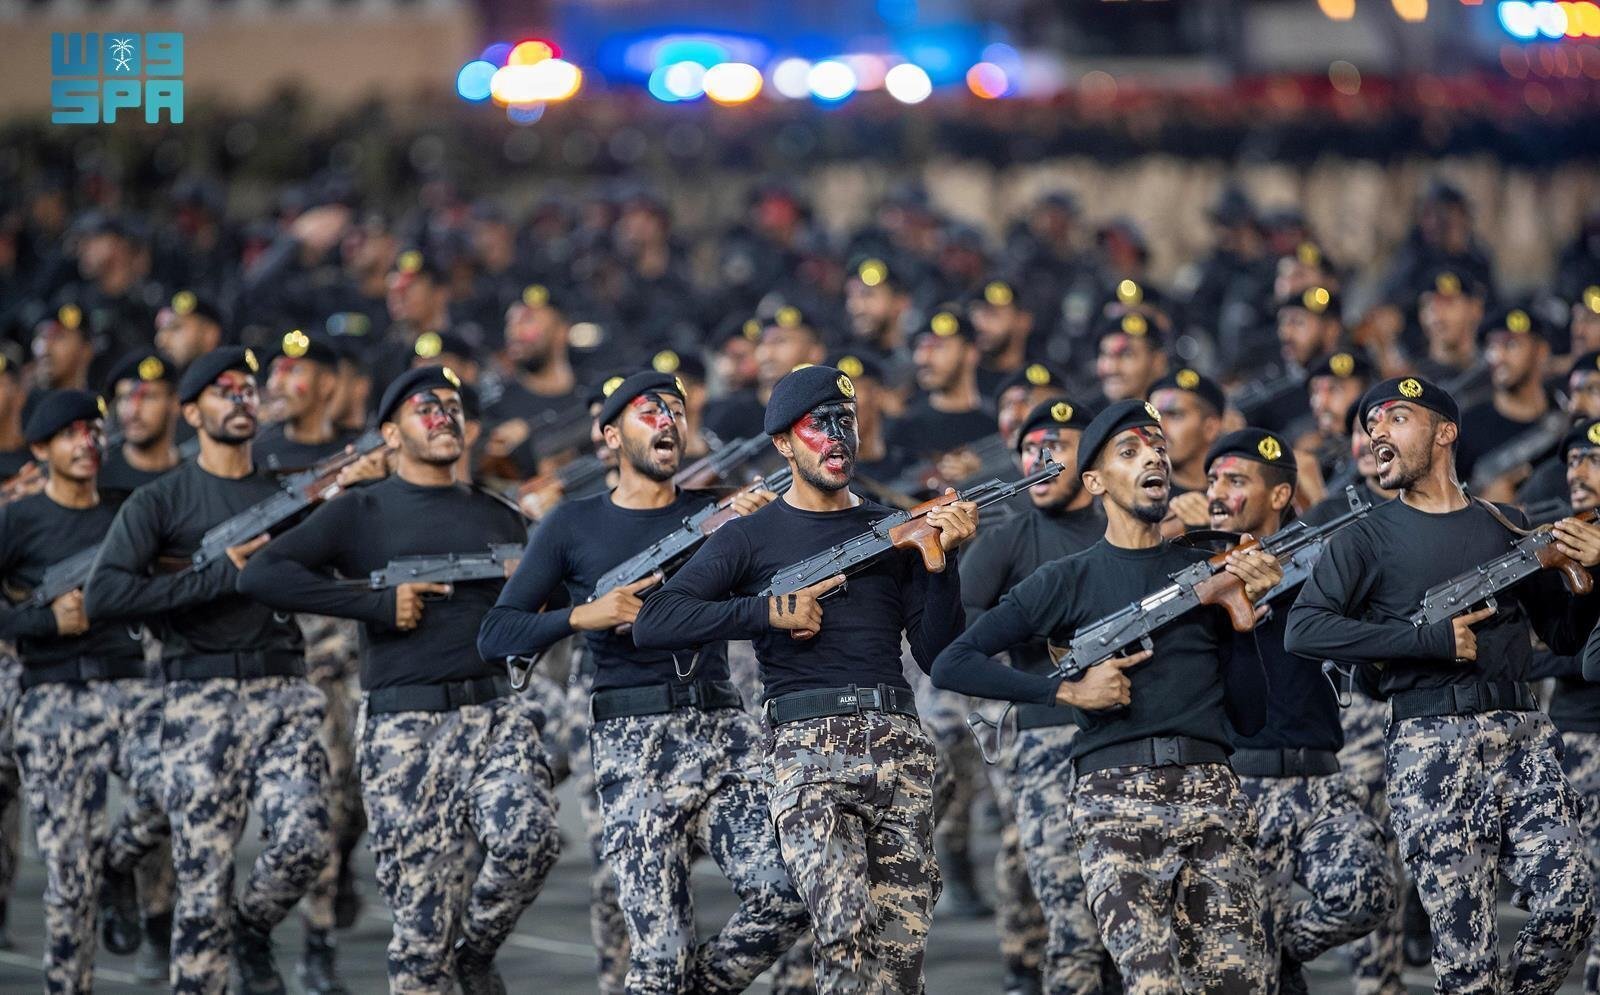 ظهور لافت للمجندات السعوديات خلال استعراض قوات أمن الحج لهذا العام (فيديو+ صور)